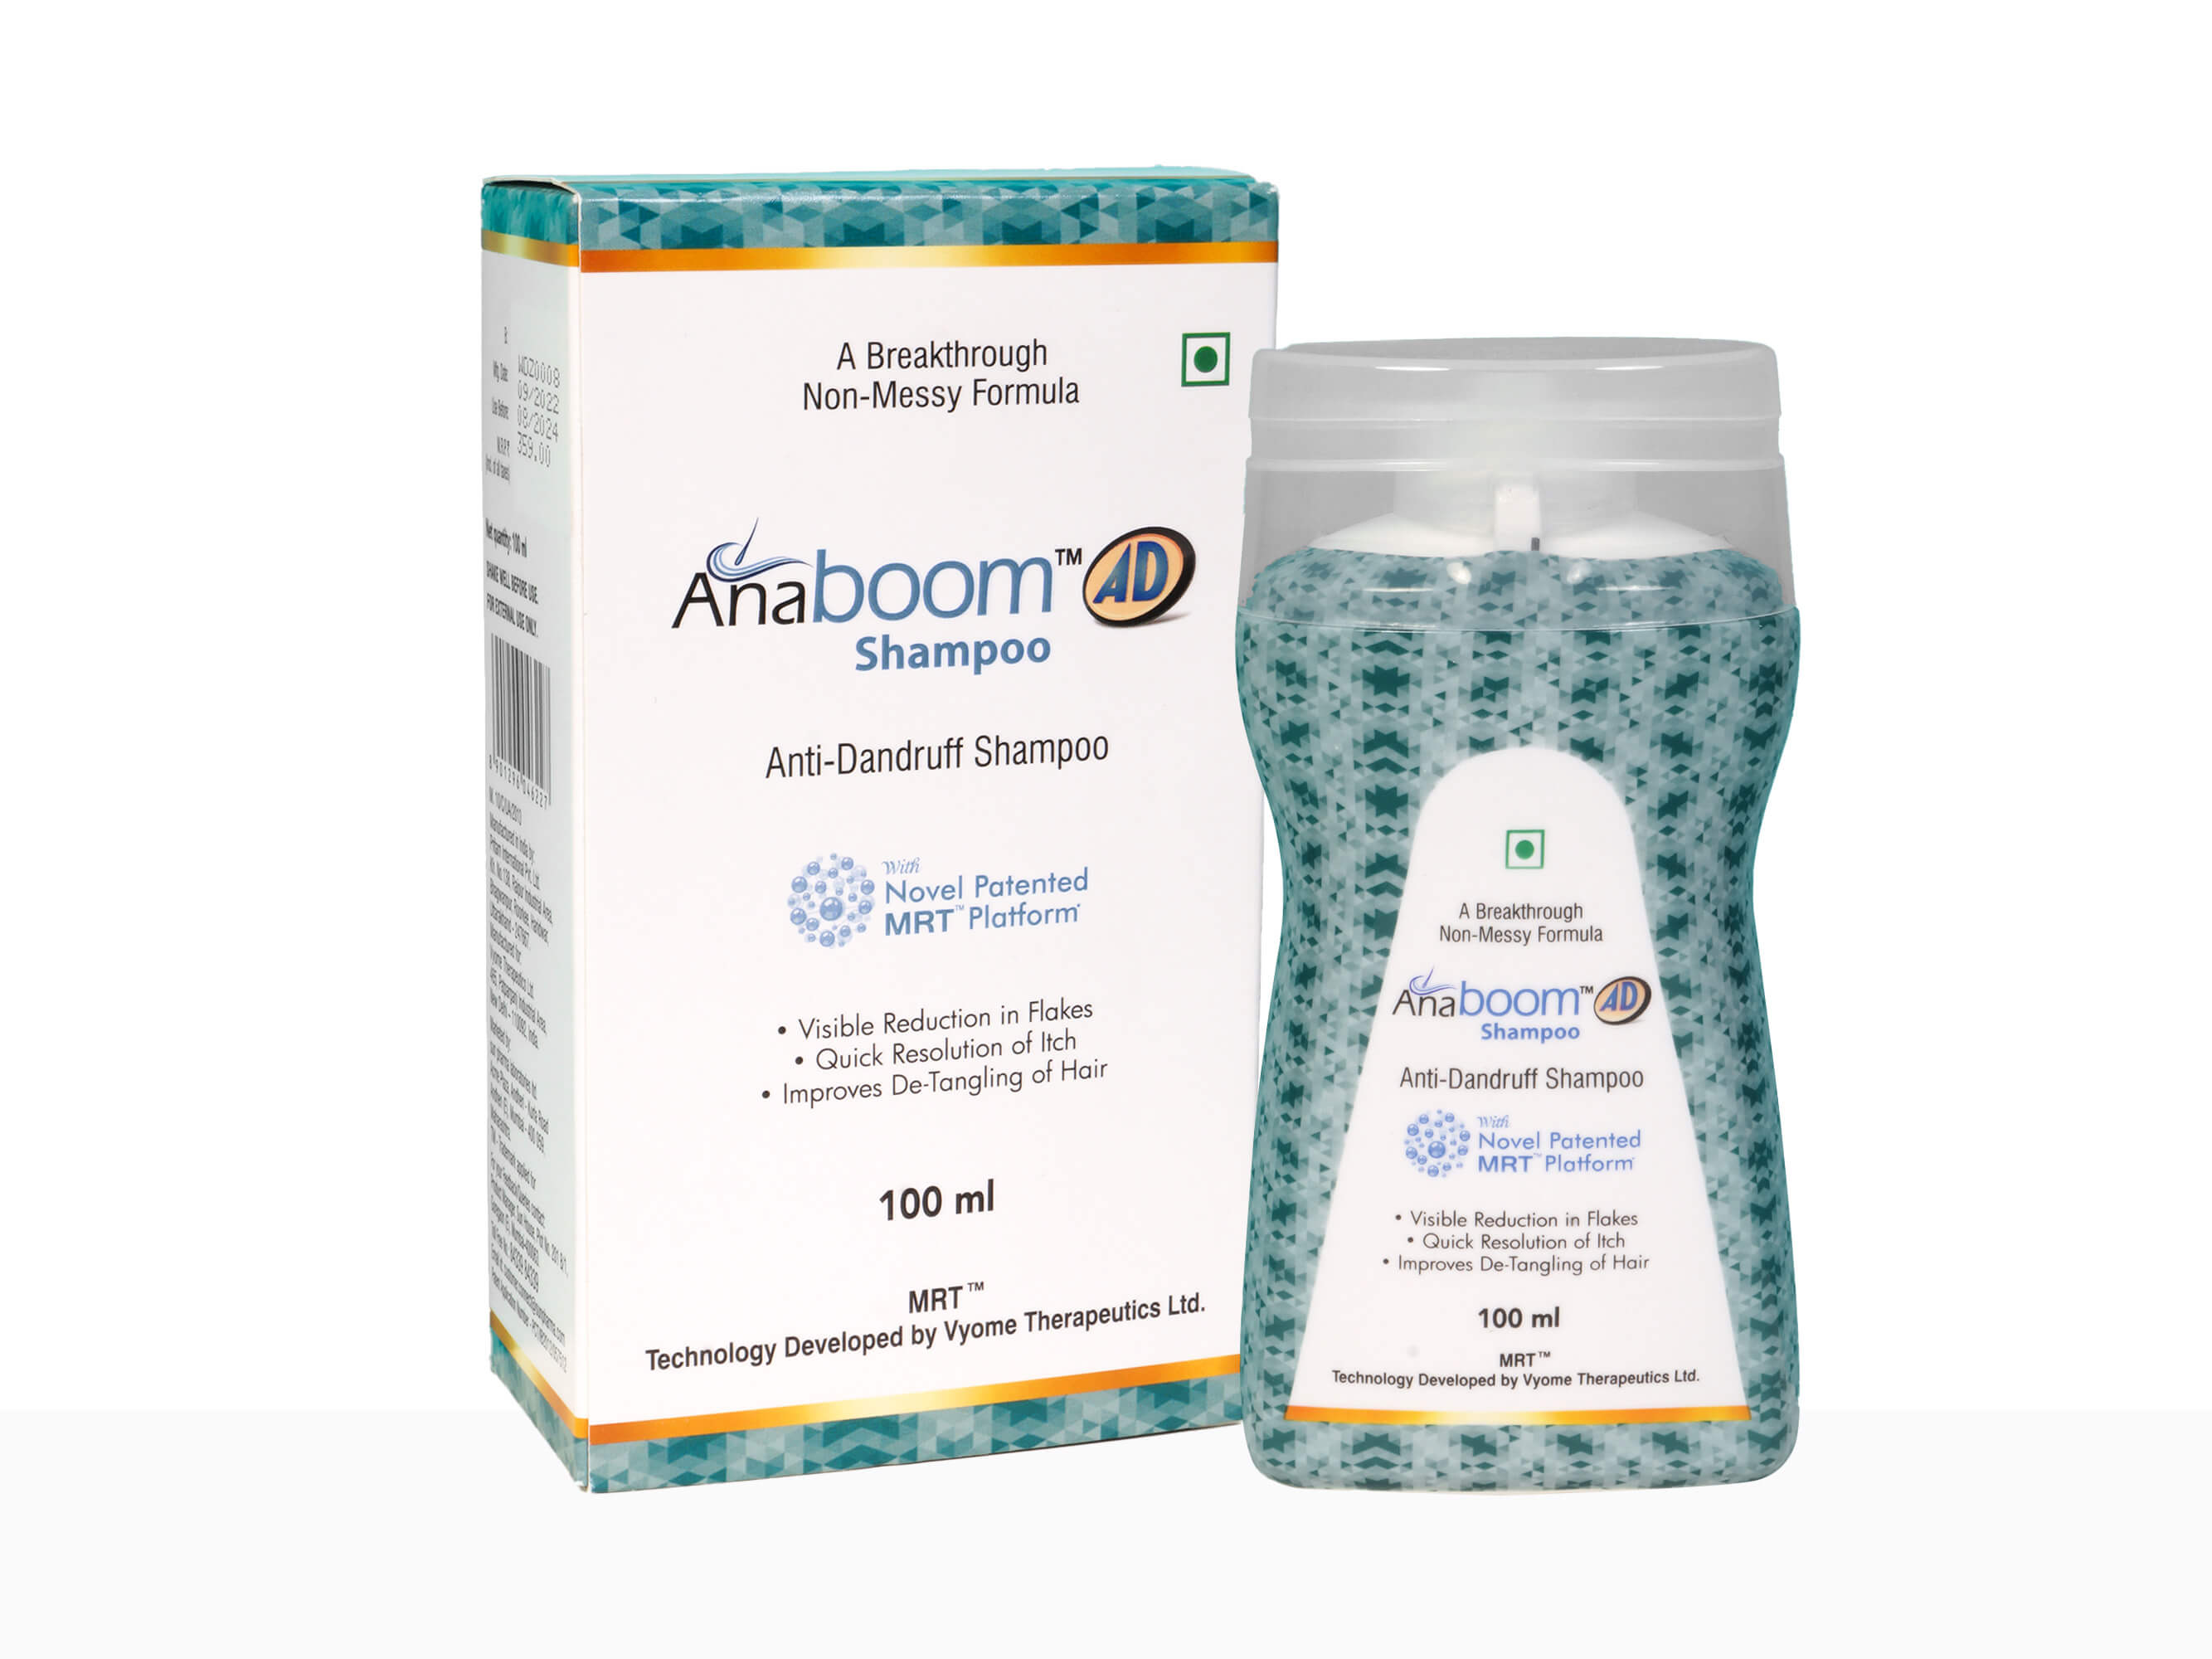 Anaboom AD Anti-Dandruff Shampoo-Clinikally